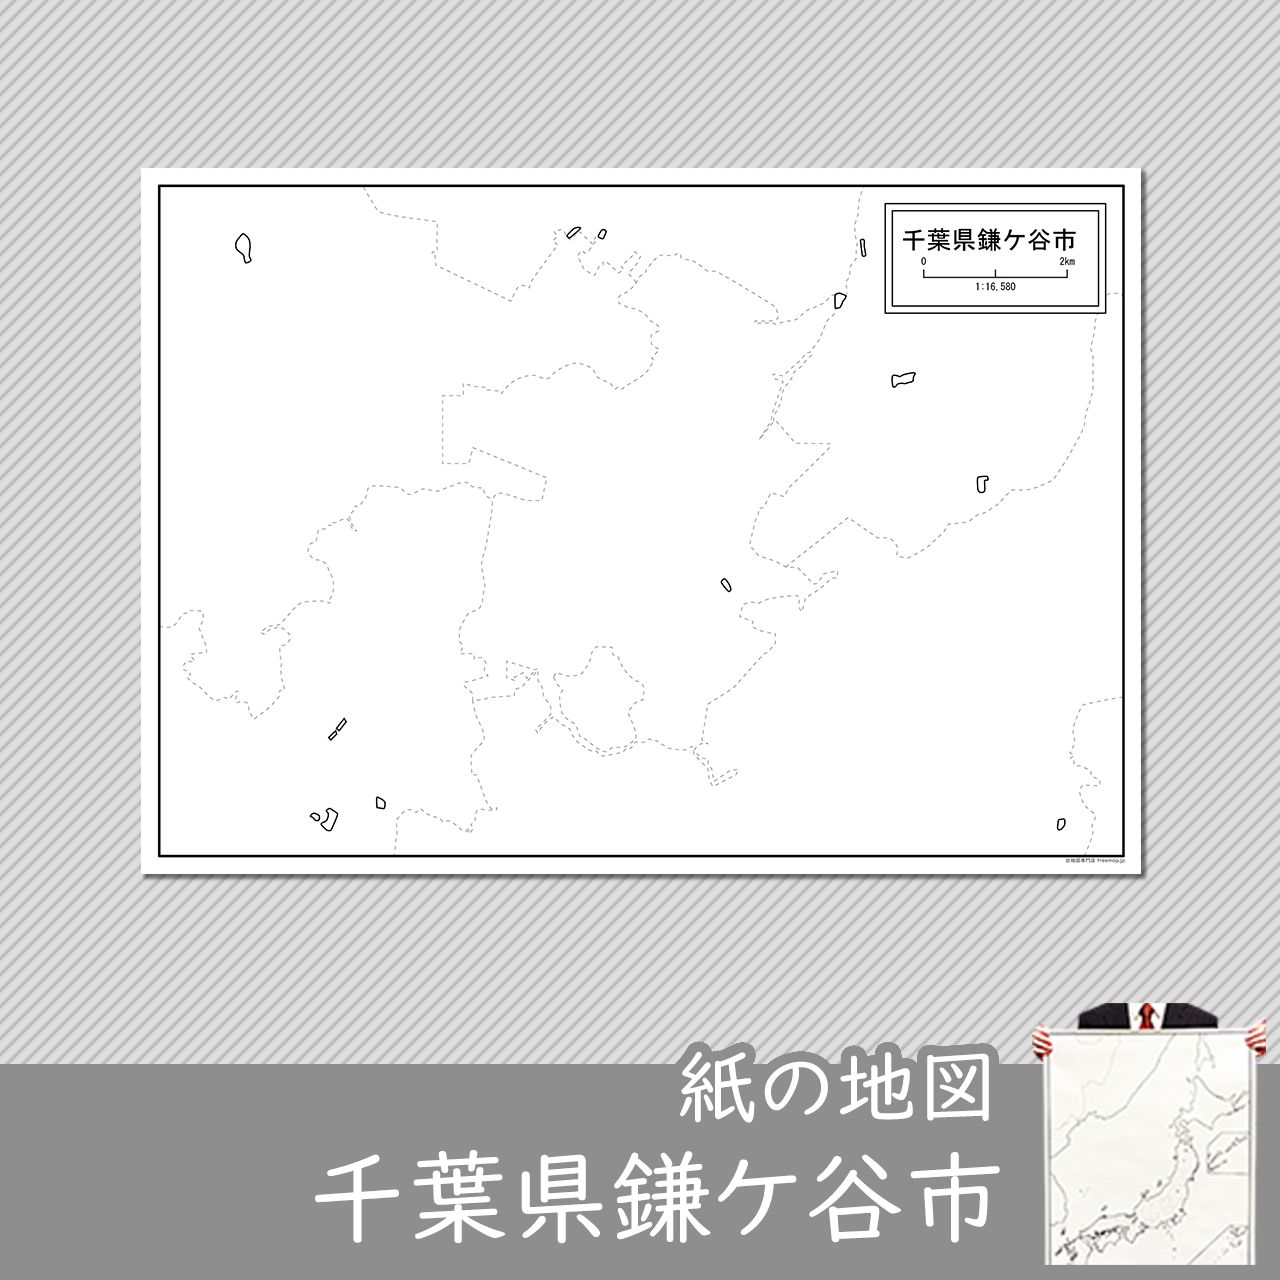 鎌ケ谷市の紙の白地図のサムネイル